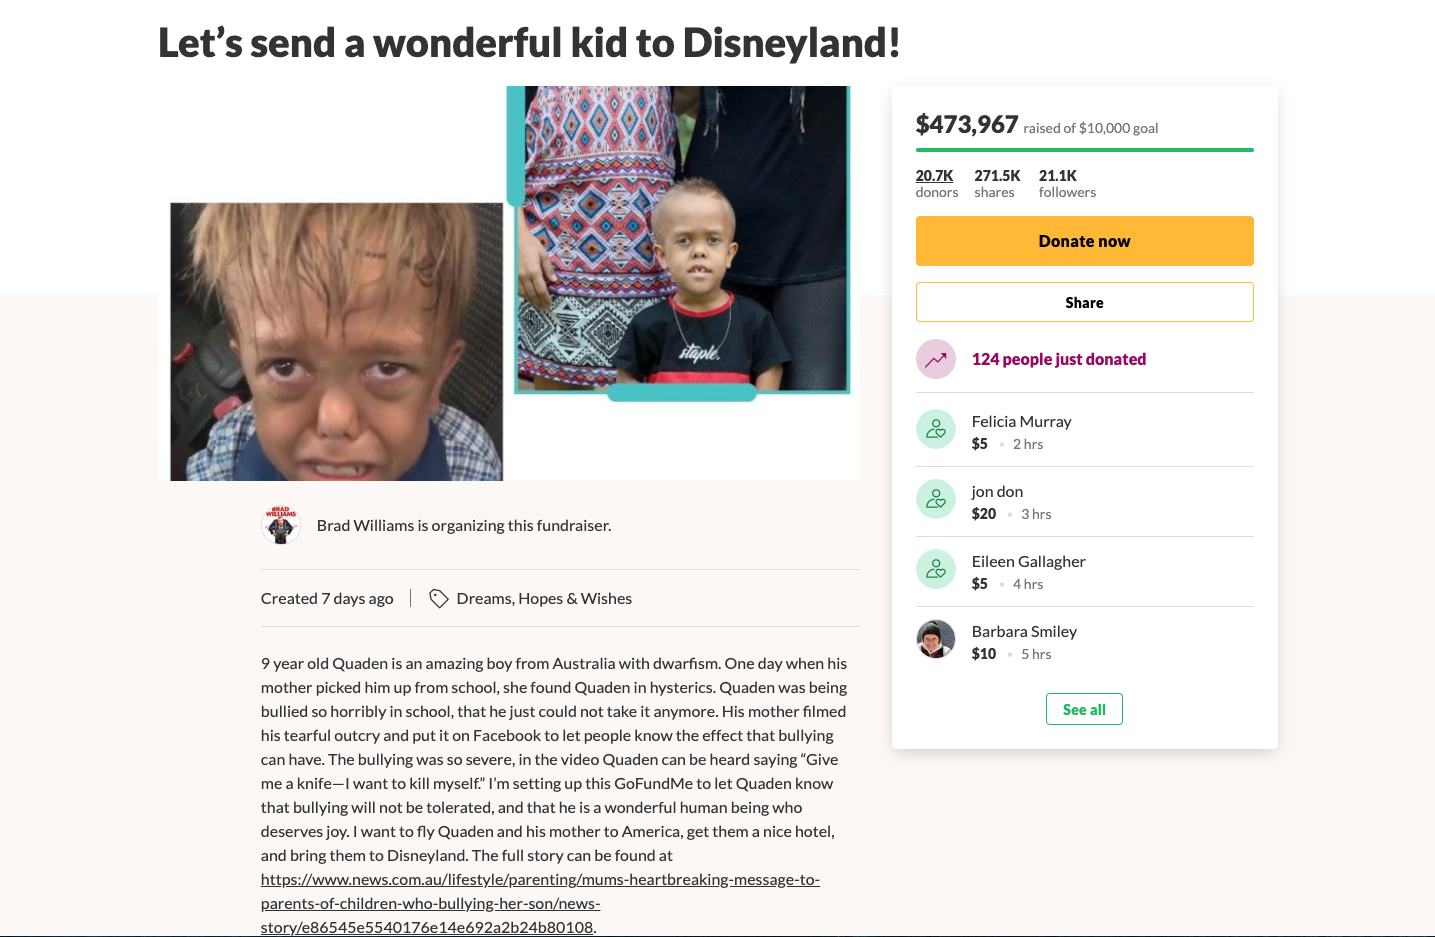 Komikern Brad Williams har namngett insamlingen ”Låt oss skicka detta fantastiska barn till Disneyland”.